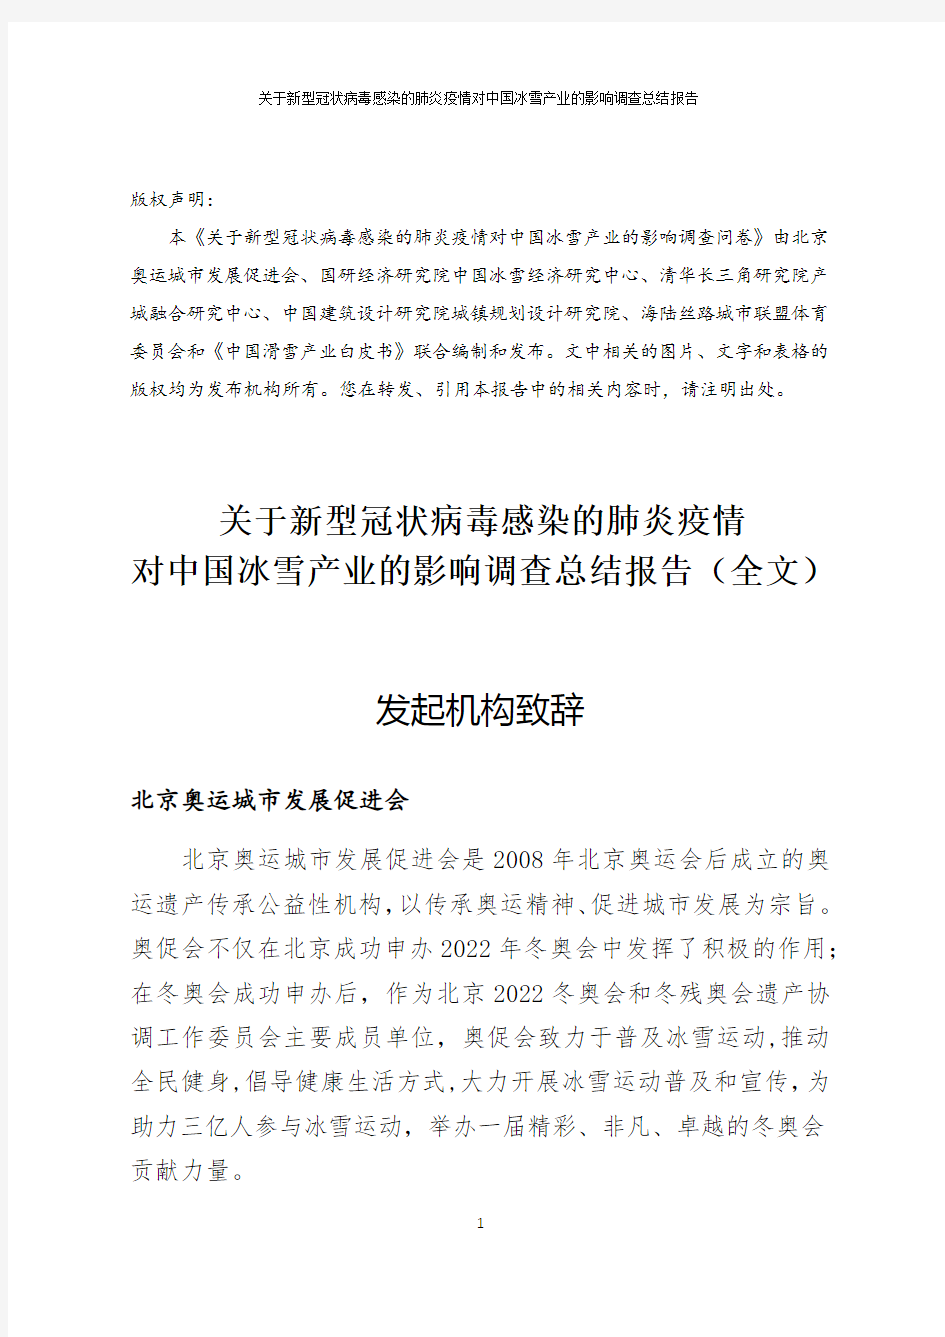 【精品报告】新.冠.疫.情.对中国冰雪产业的影响报告-北京奥运城市发展促进会